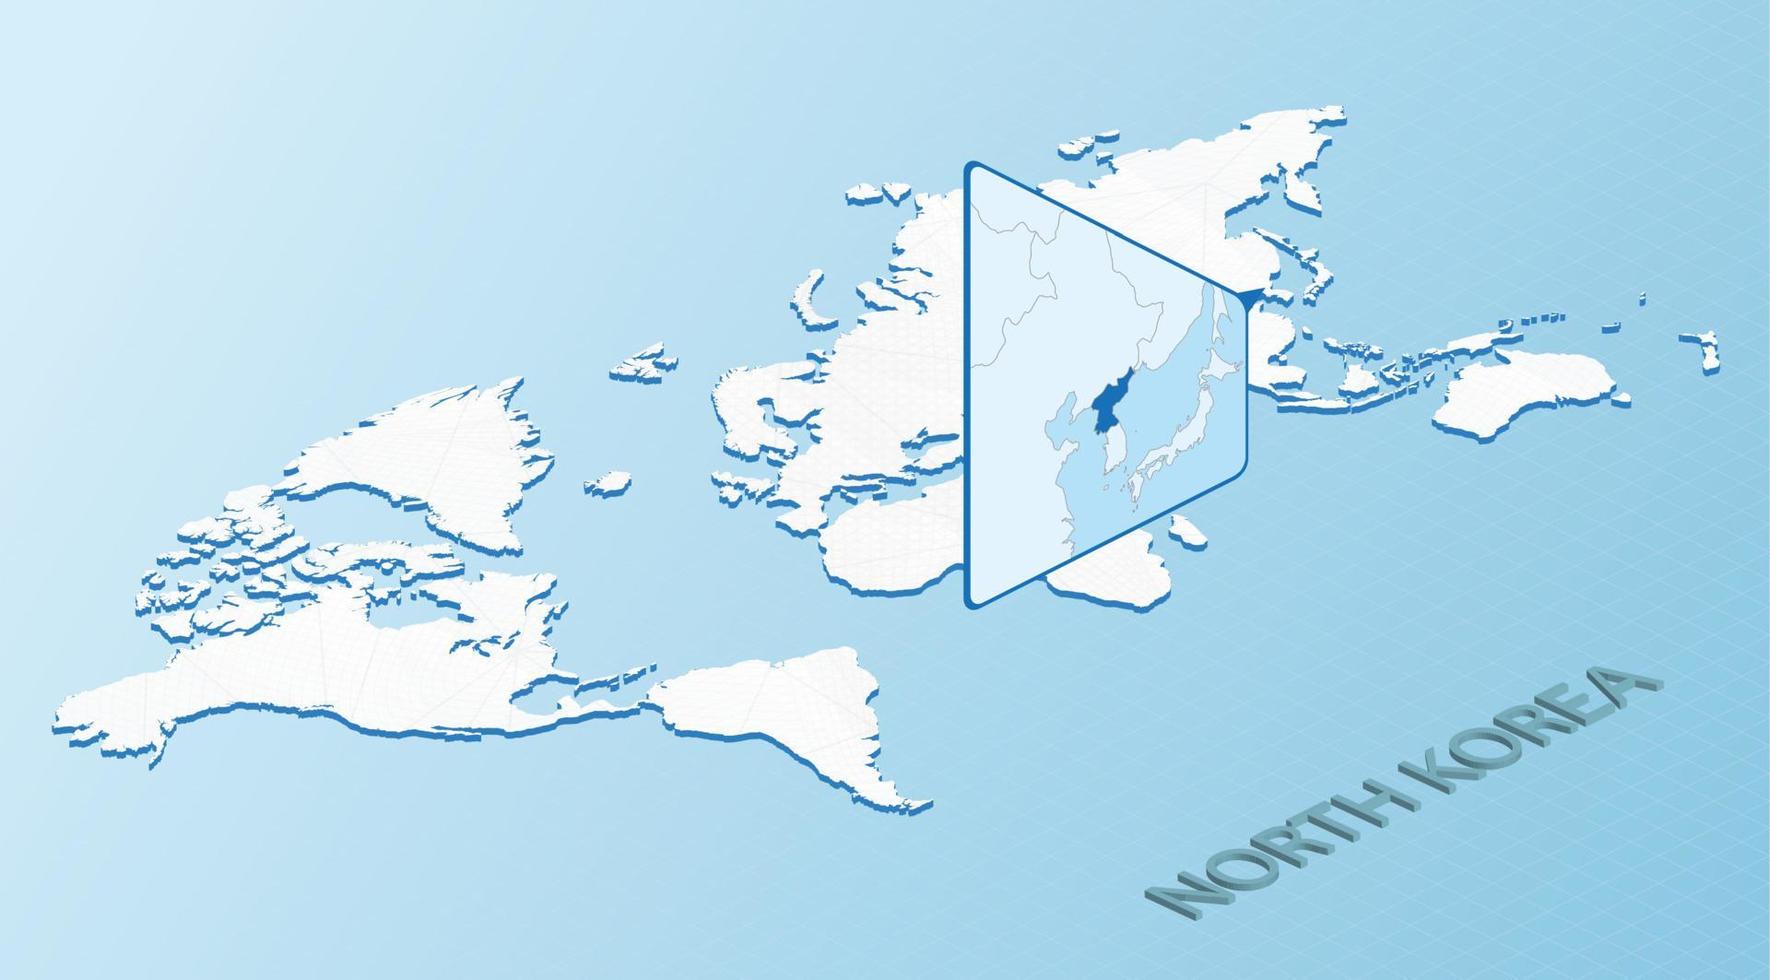 wereld kaart in isometrische stijl met gedetailleerd kaart van noorden Korea. licht blauw noorden Korea kaart met abstract wereld kaart. vector